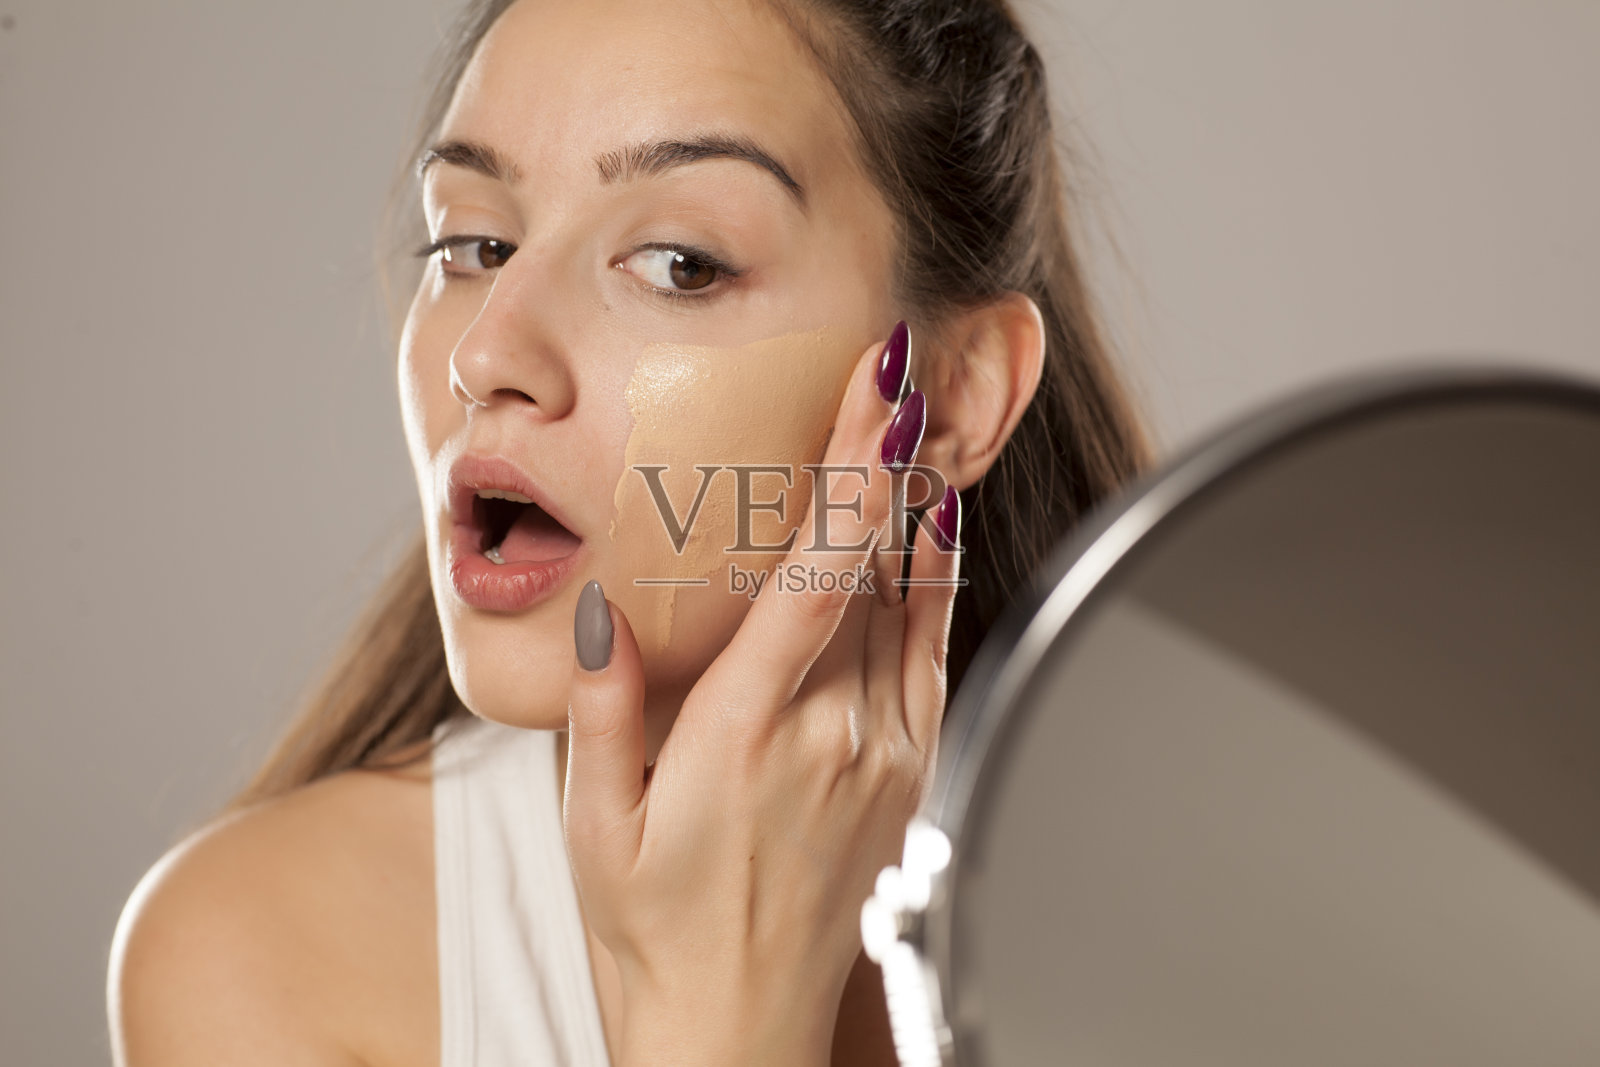 一位年轻女子用手指在脸上涂抹粉底液照片摄影图片